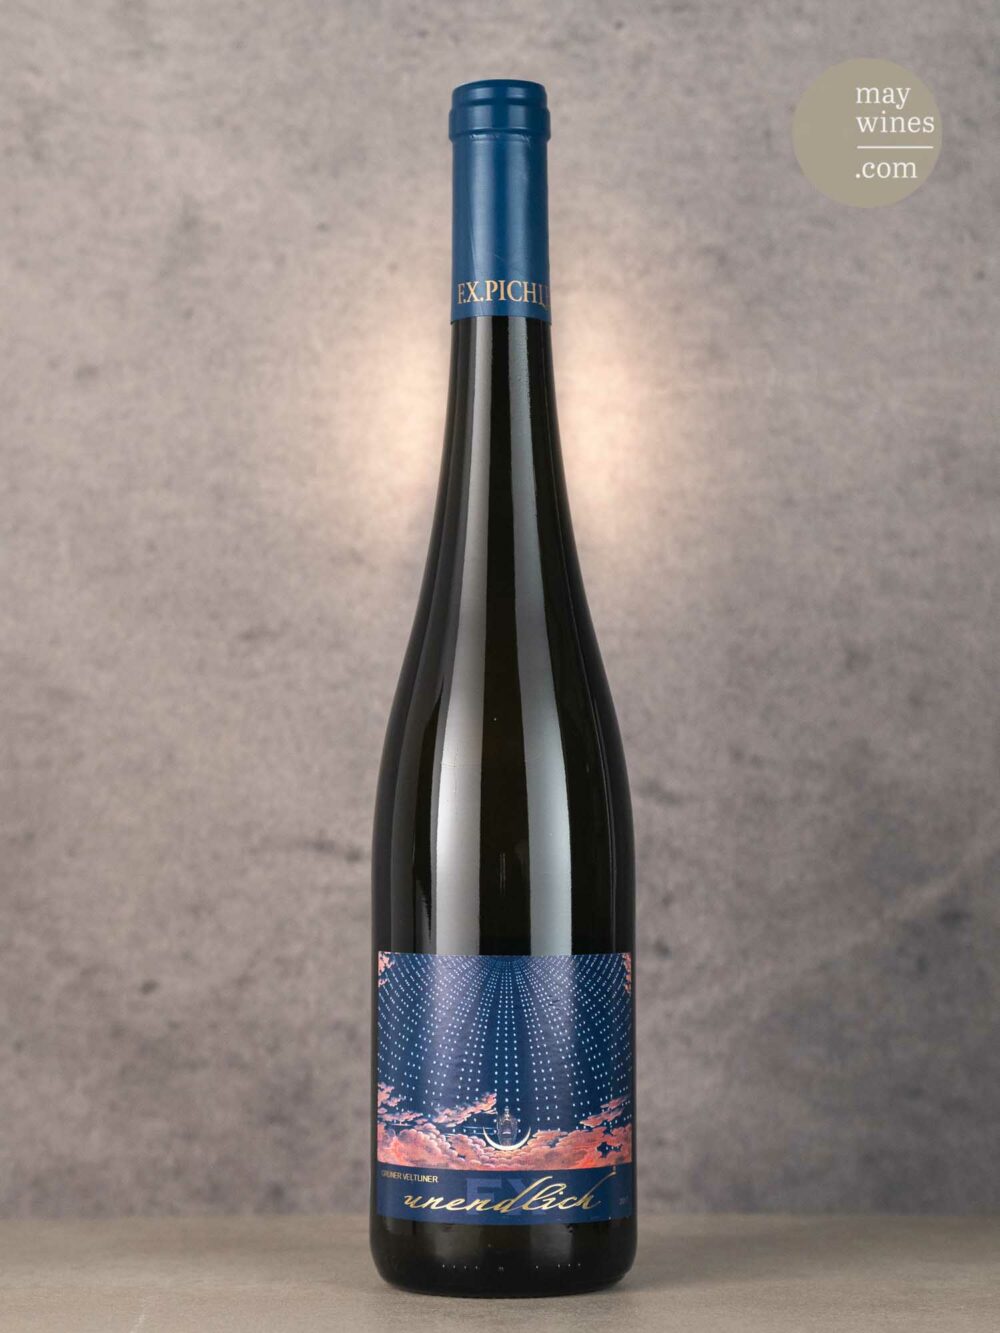 May Wines – Weißwein – 2017 Unendlich Grüner Veltliner Smaragd - Weingut FX Pichler